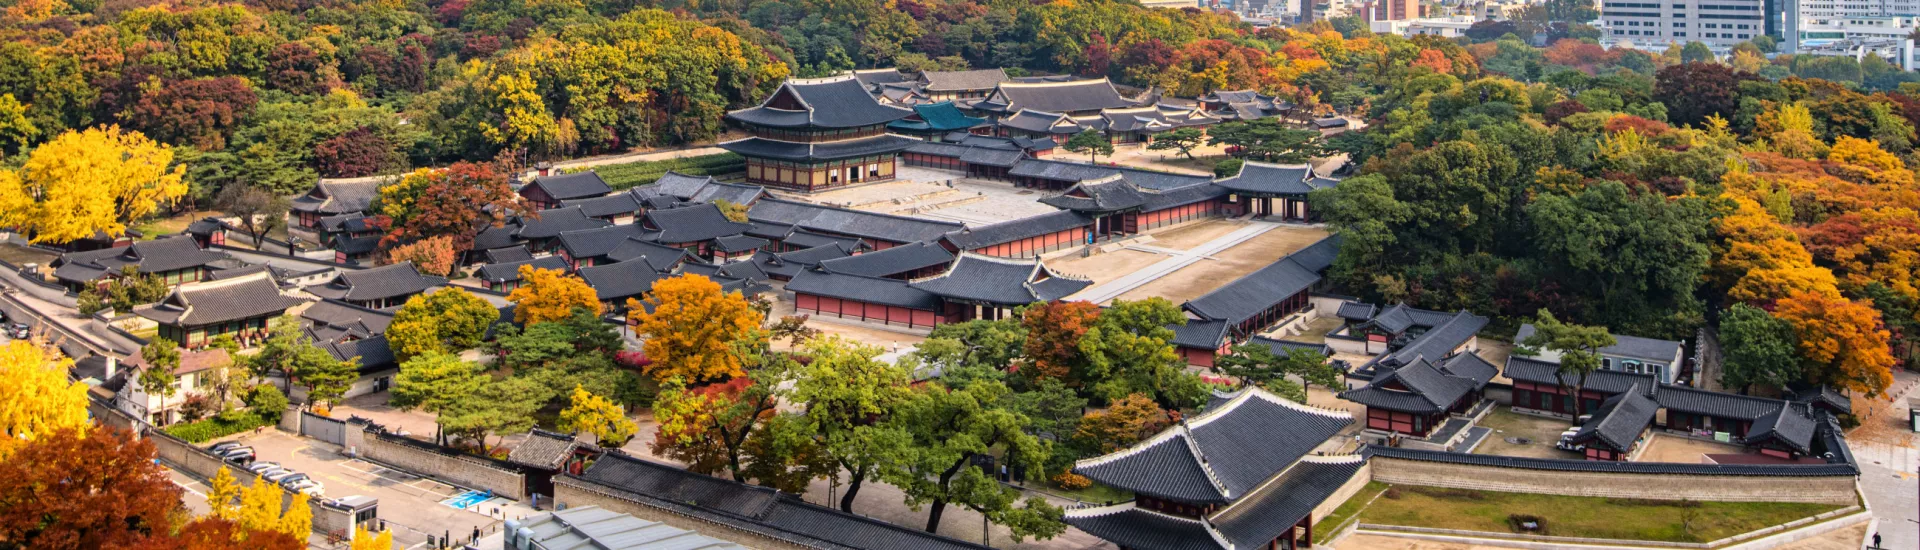 Herbstansicht des Changdeokgung-Palastes in Seoul, Südkorea